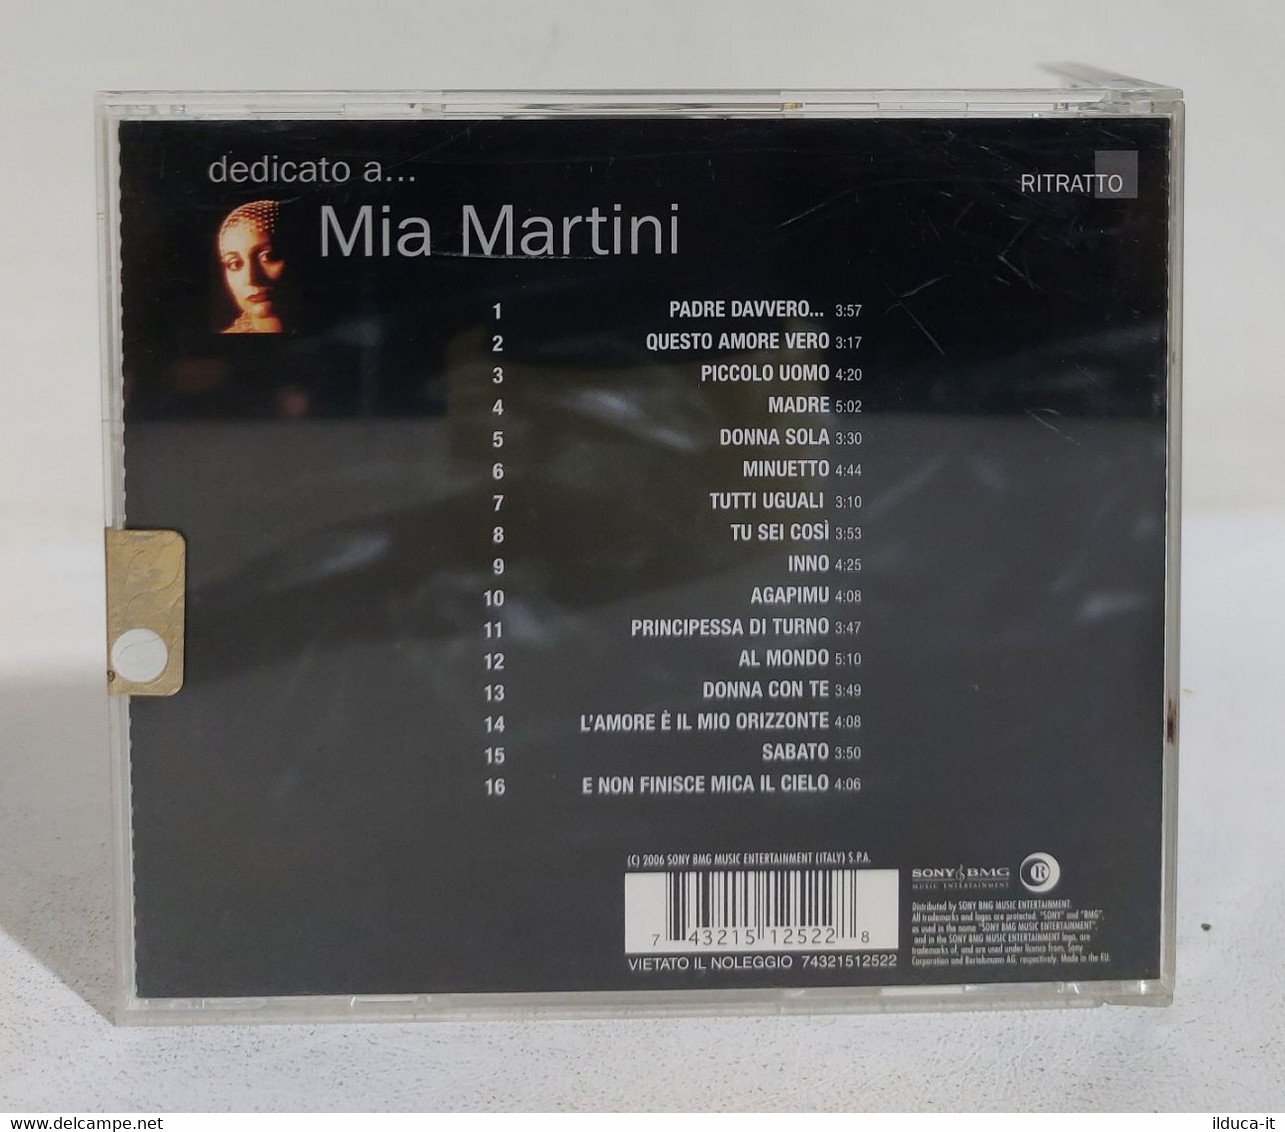 I107935 CD - MIA MARTINI - Dedicato A... - Sony 2006 - Sonstige - Italienische Musik